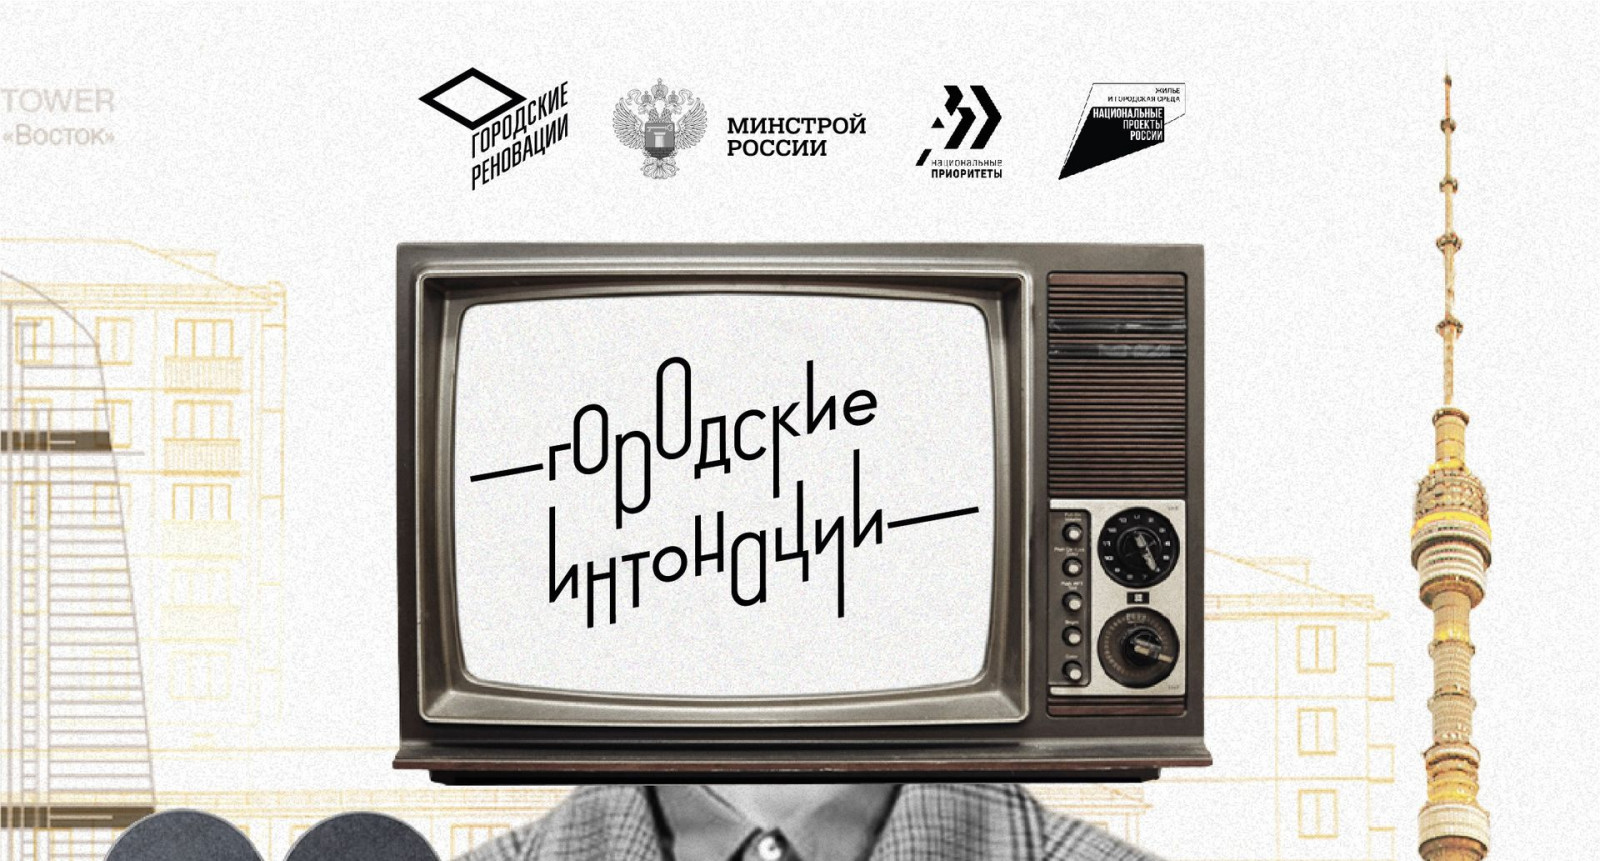 «Городские интонации» - всероссийский молодежный конкурс медиапроектов в сфере урбанистики